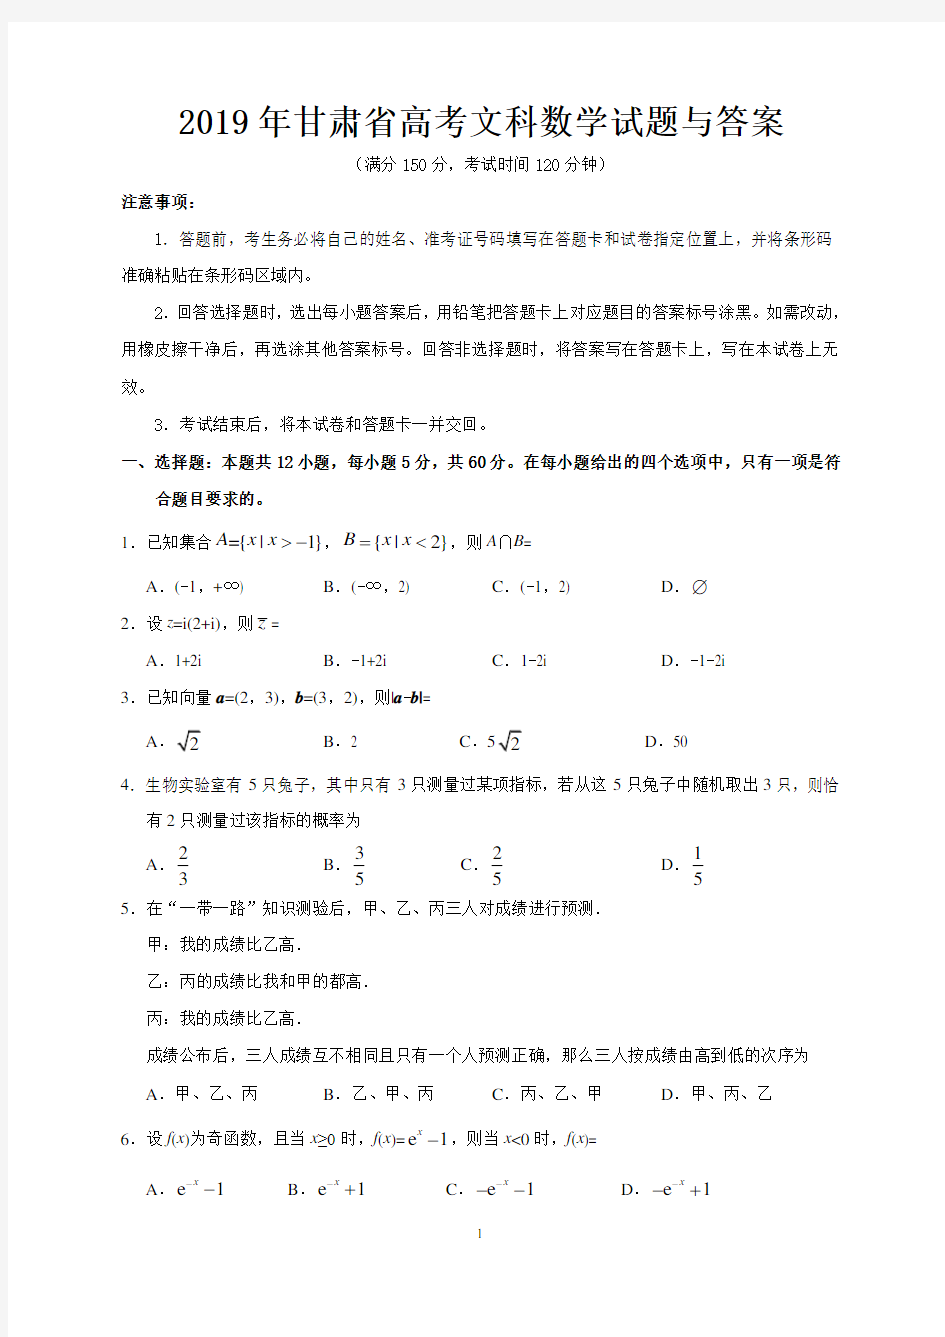 2019年甘肃省高考文科数学试题与答案